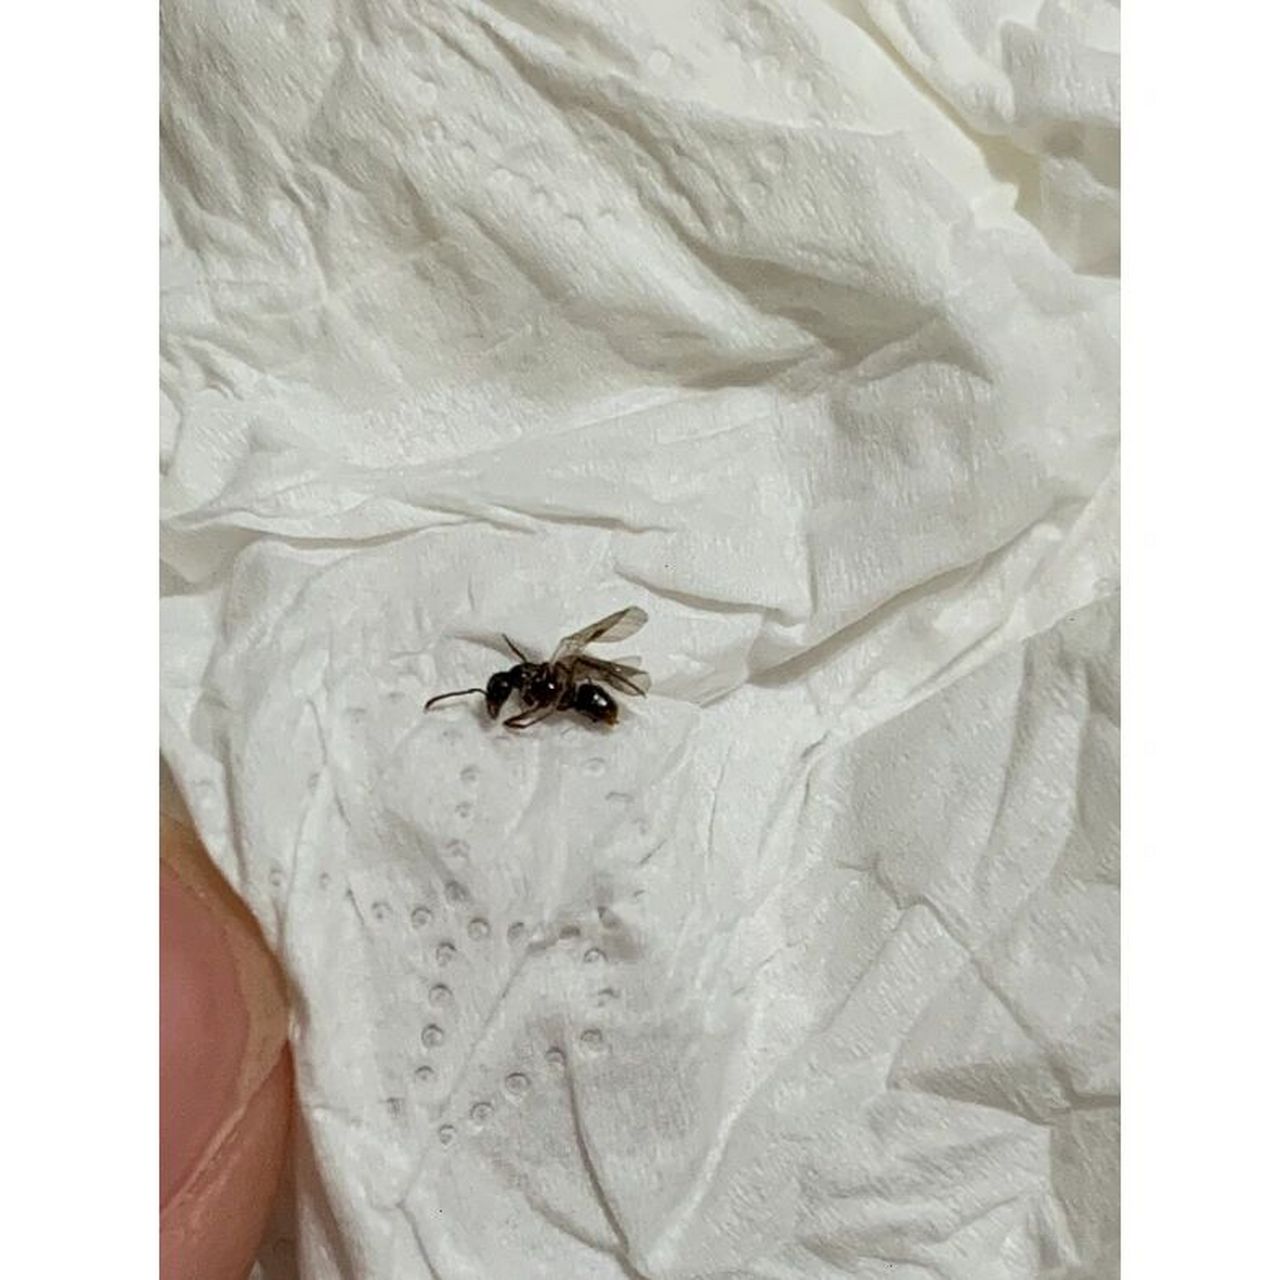 家里突然出现好多这种带翅膀的蚂蚁 这是白蚁吗,在床上发现好几只了